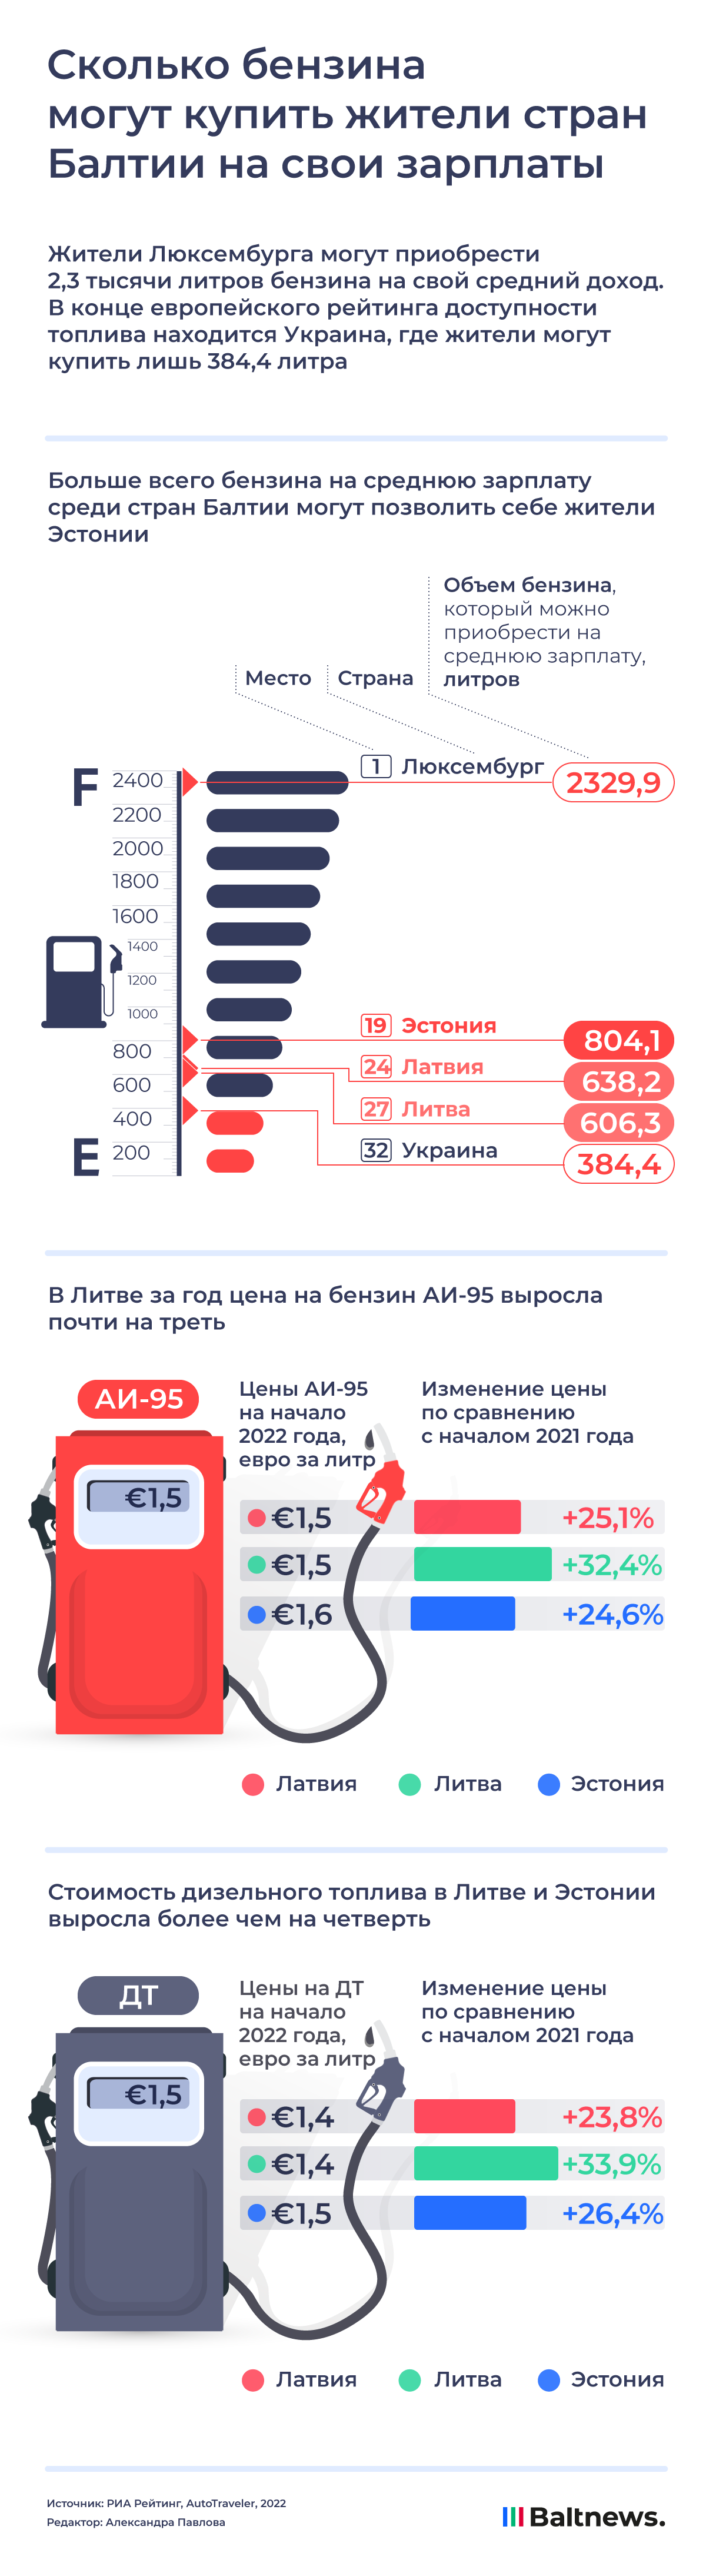 Сколько бензина могут купить жители стран Балтии на свои зарплаты